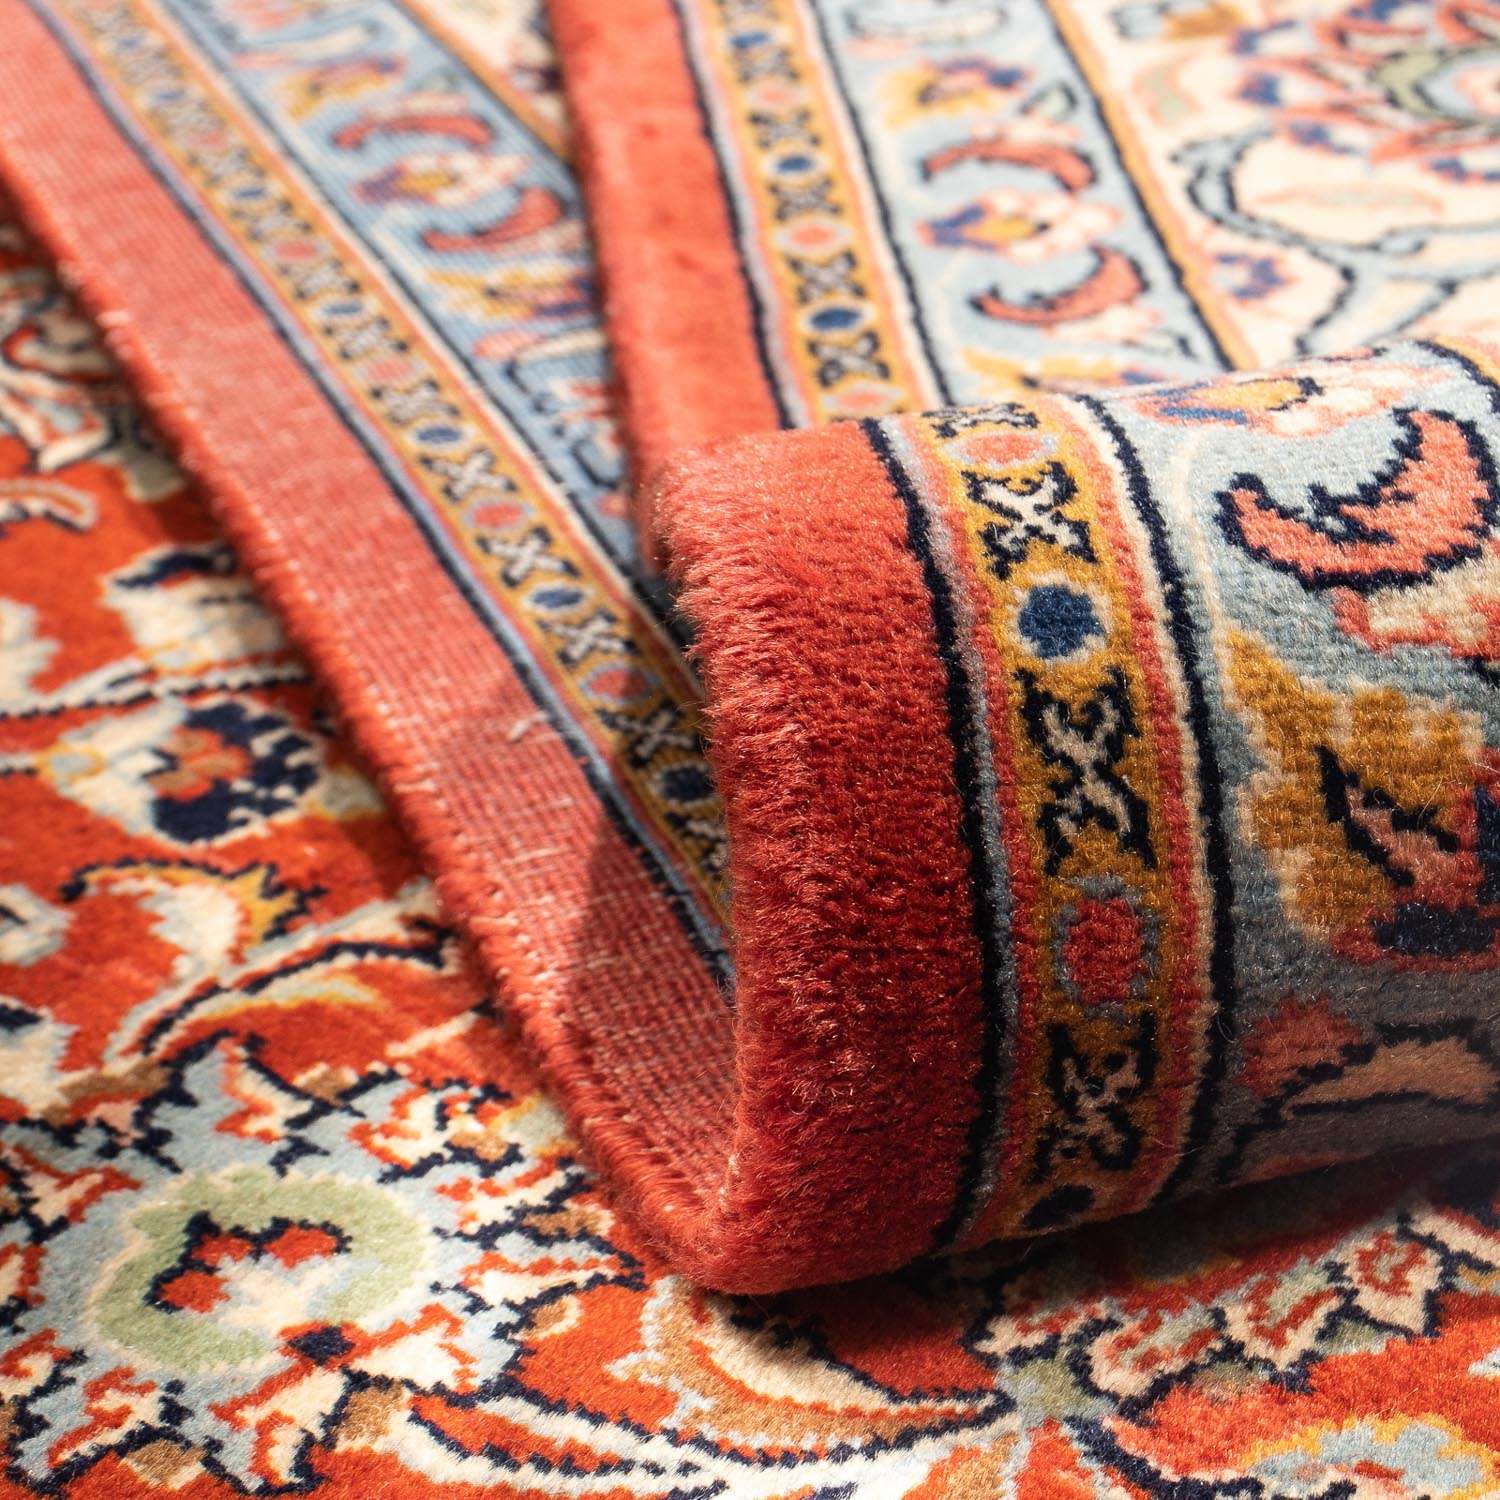 Persisk teppe - klassisk - 295 x 200 cm - mørk rød